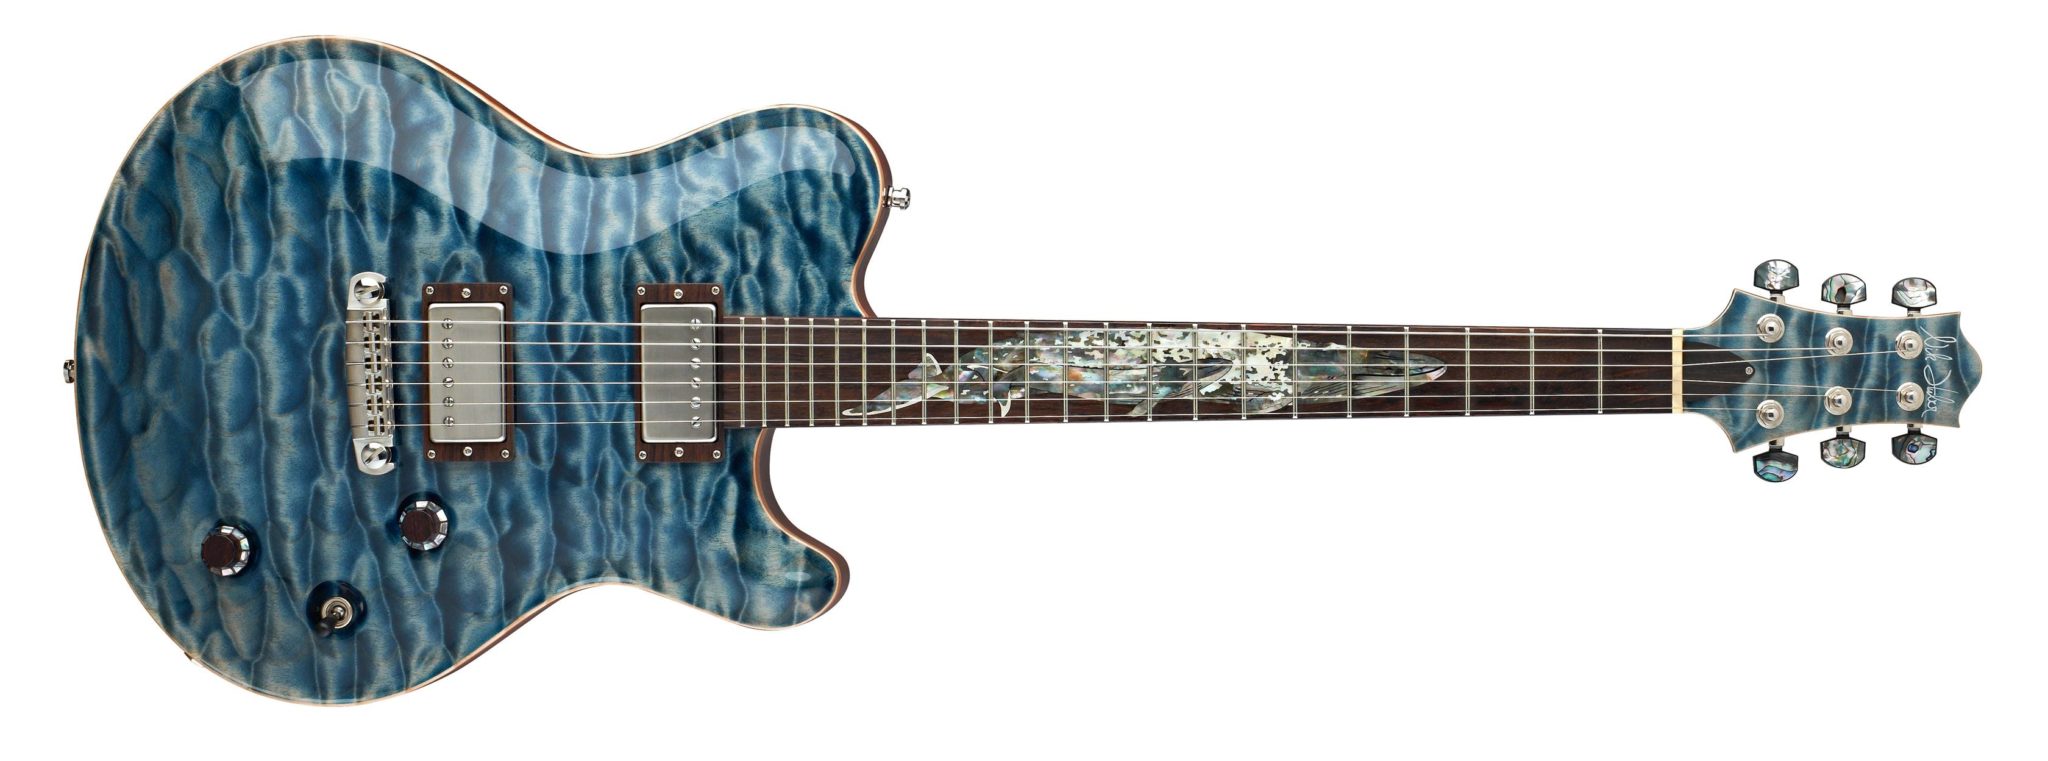 Die Blue Whale Limited mit kunstvollen Intarsien im Griffbrett - Foto by Nik Huber Guitars